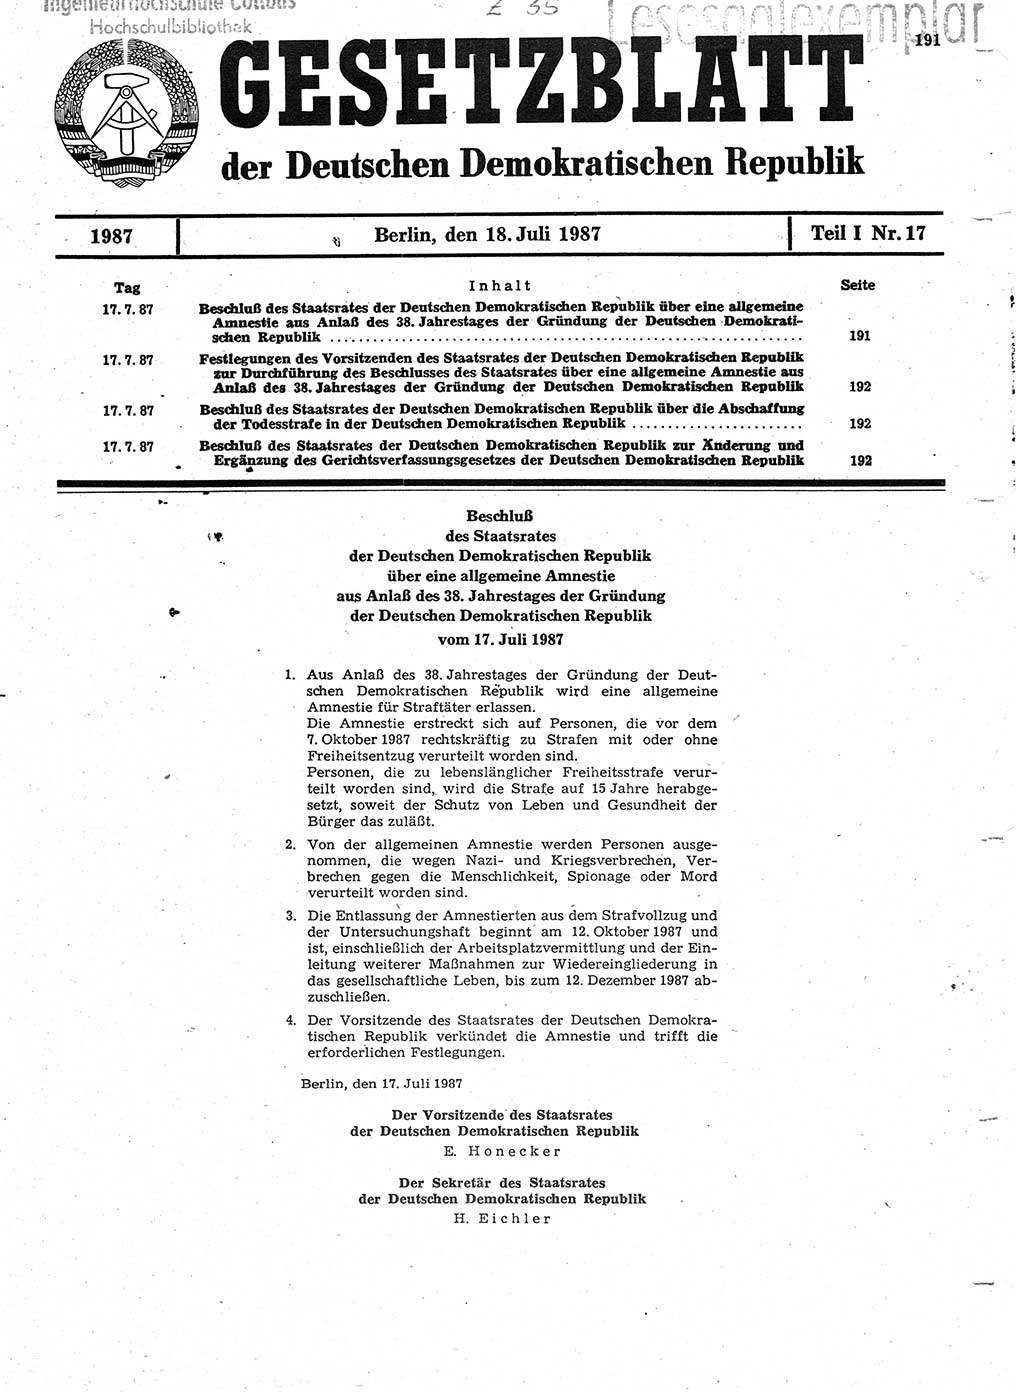 Gesetzblatt (GBl.) der Deutschen Demokratischen Republik (DDR) Teil Ⅰ 1987, Seite 191 (GBl. DDR Ⅰ 1987, S. 191)